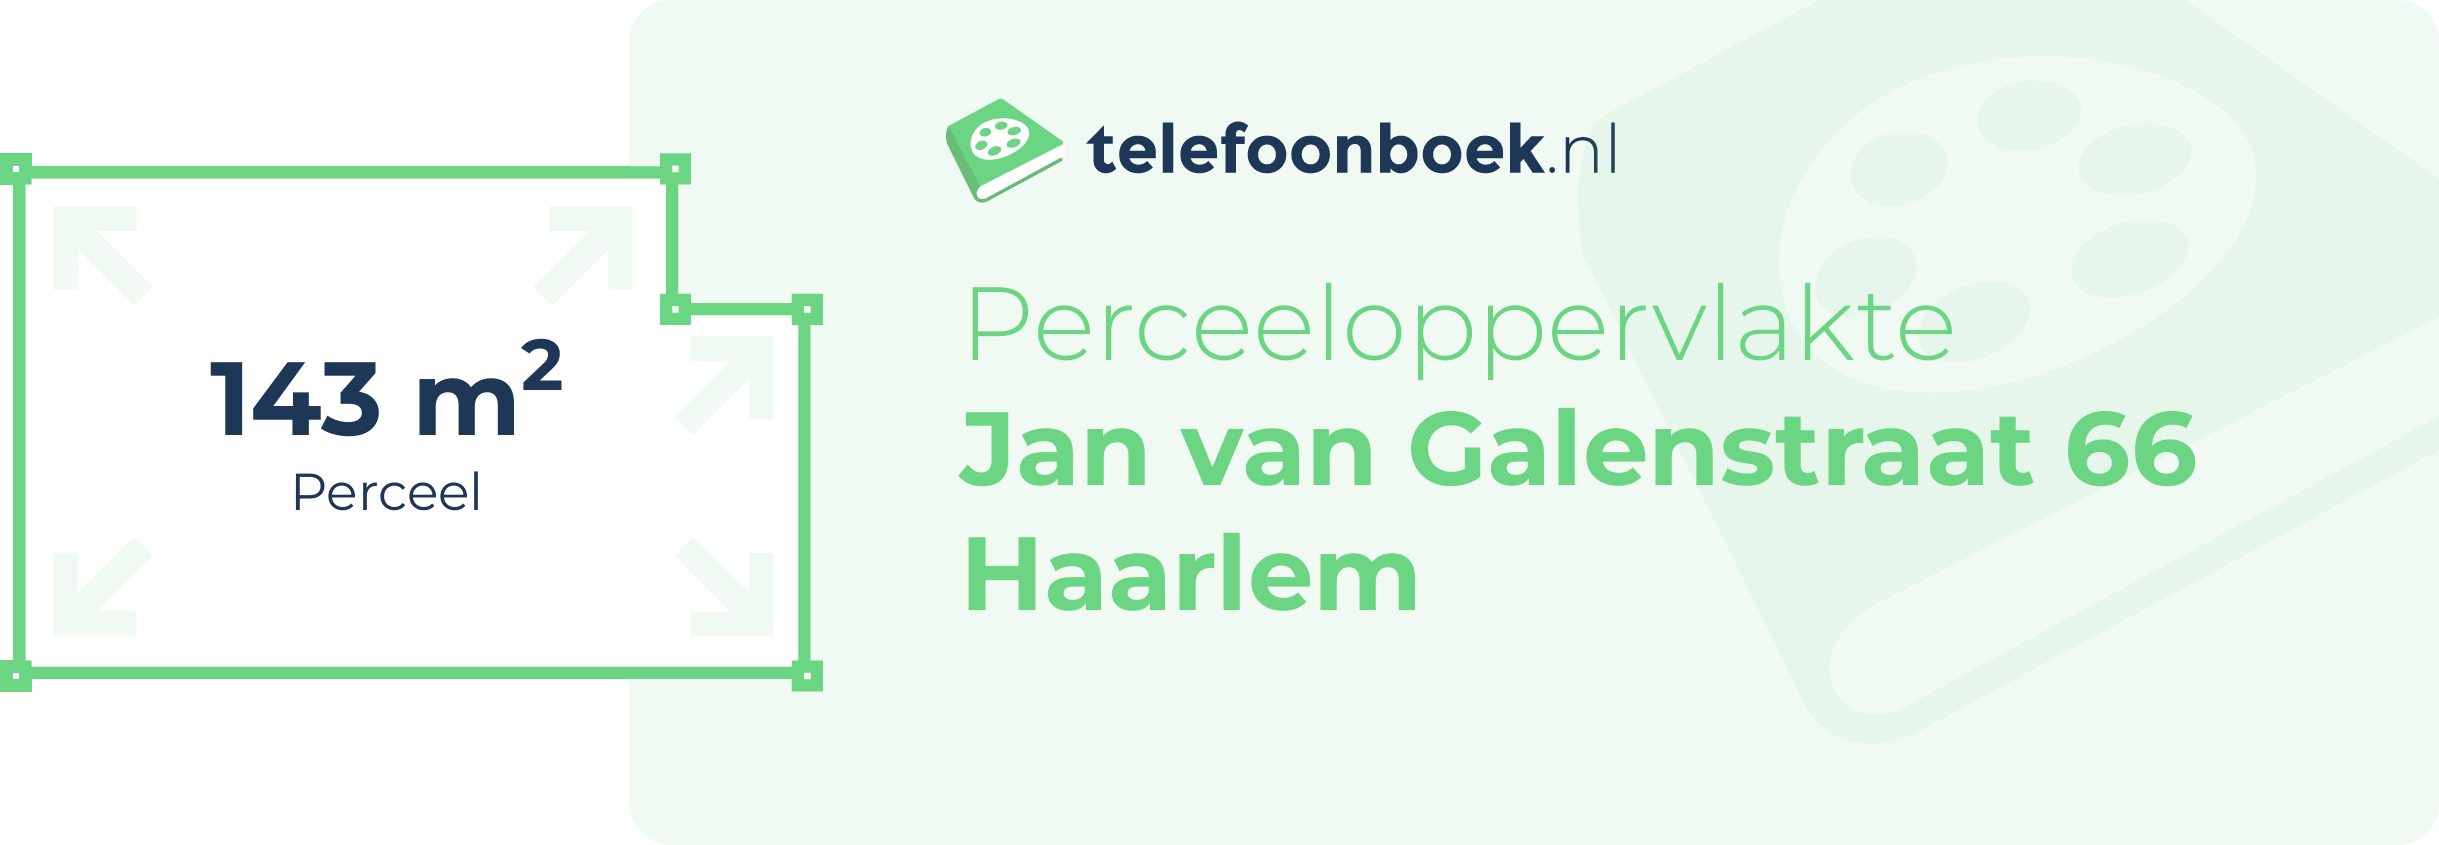 Perceeloppervlakte Jan Van Galenstraat 66 Haarlem